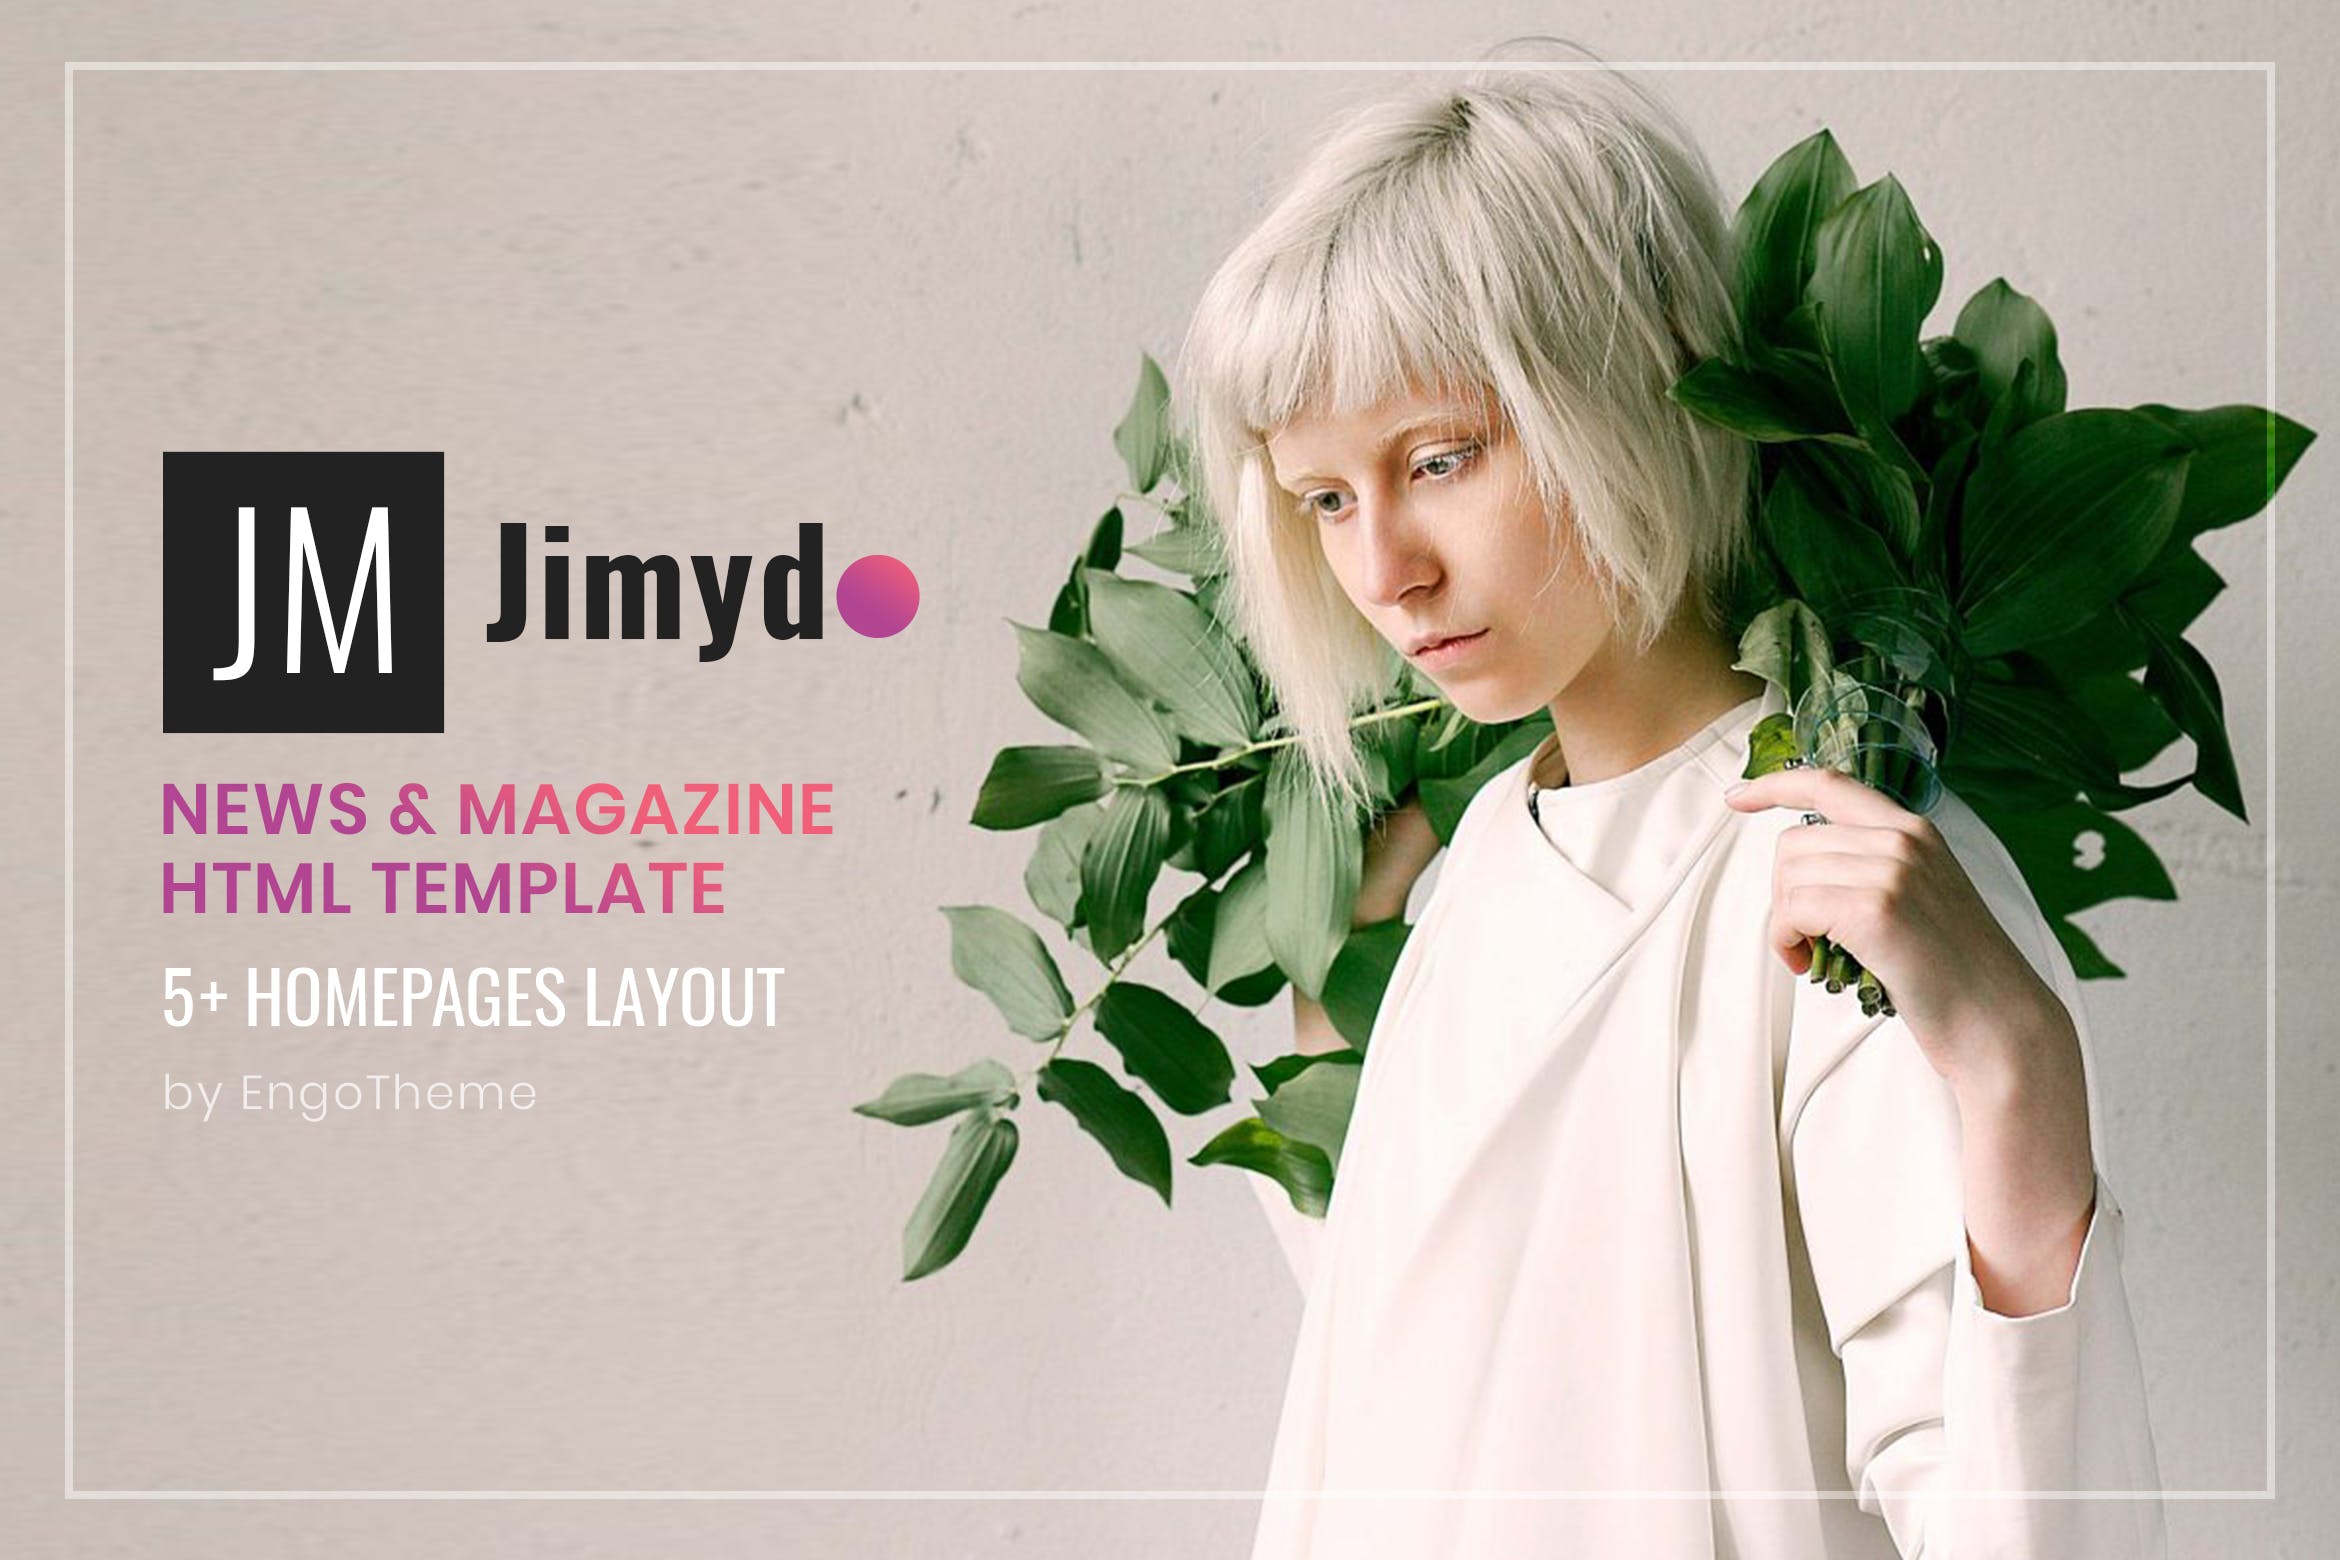 新闻资讯&杂志主题网站建设HTML模板蚂蚁素材精选下载 JIMYDO | News & Magazine HTML Template插图